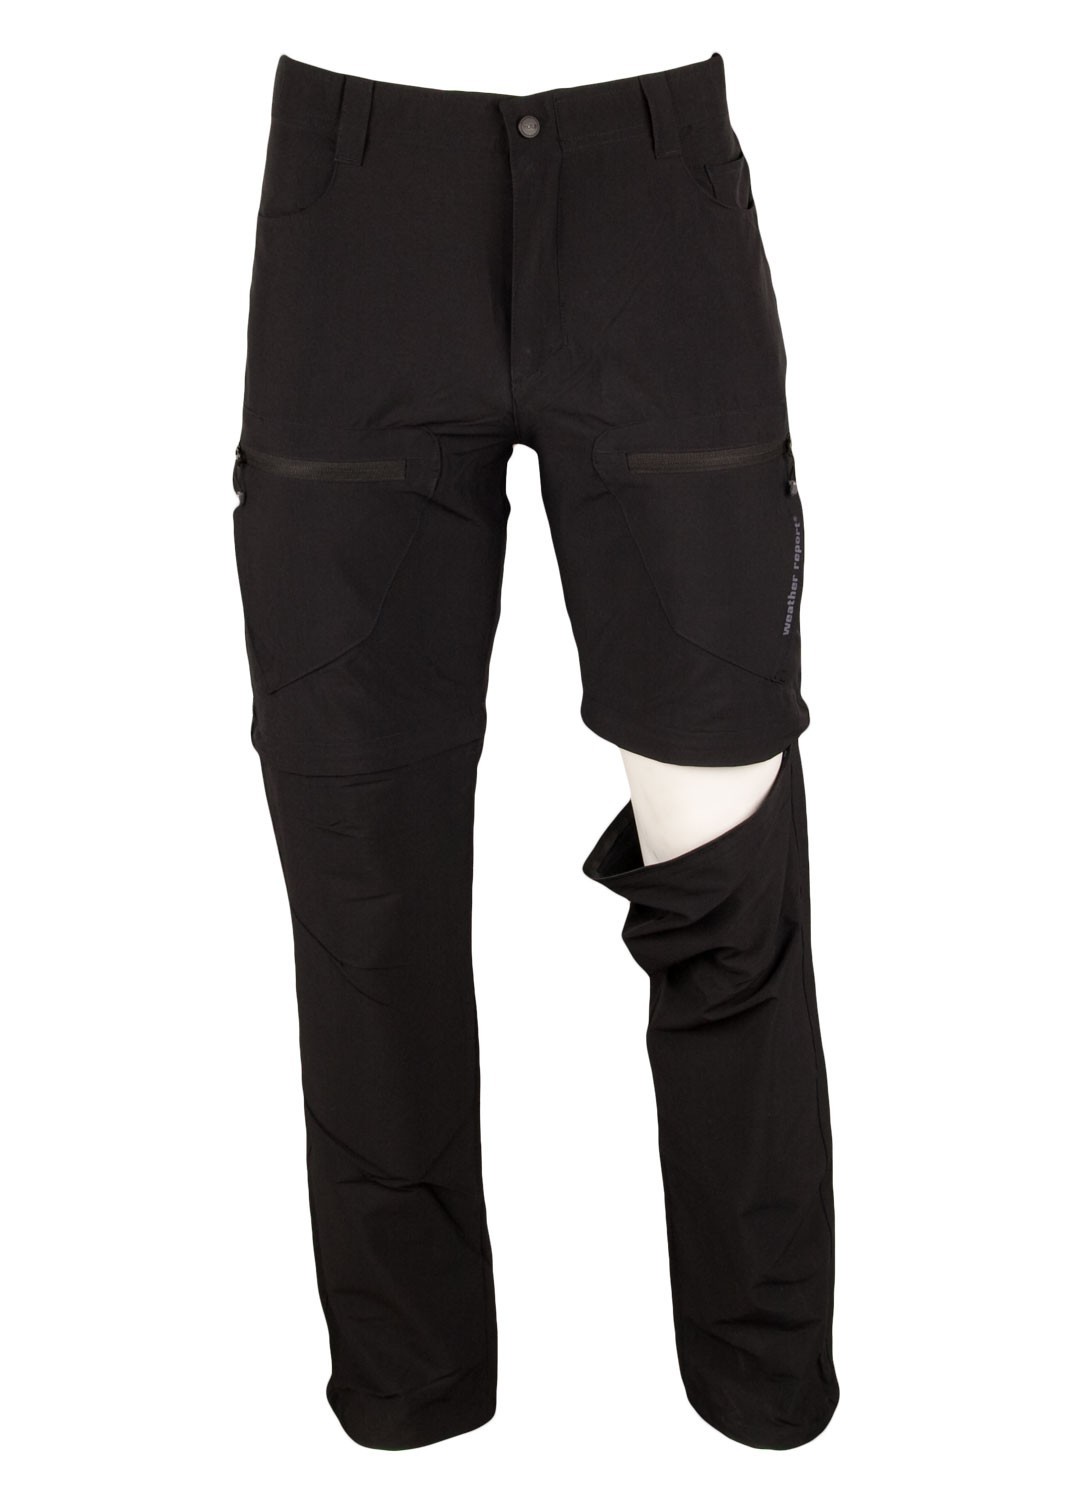 Spodnie z odpinanymi nogawkami Weather Report, czarne